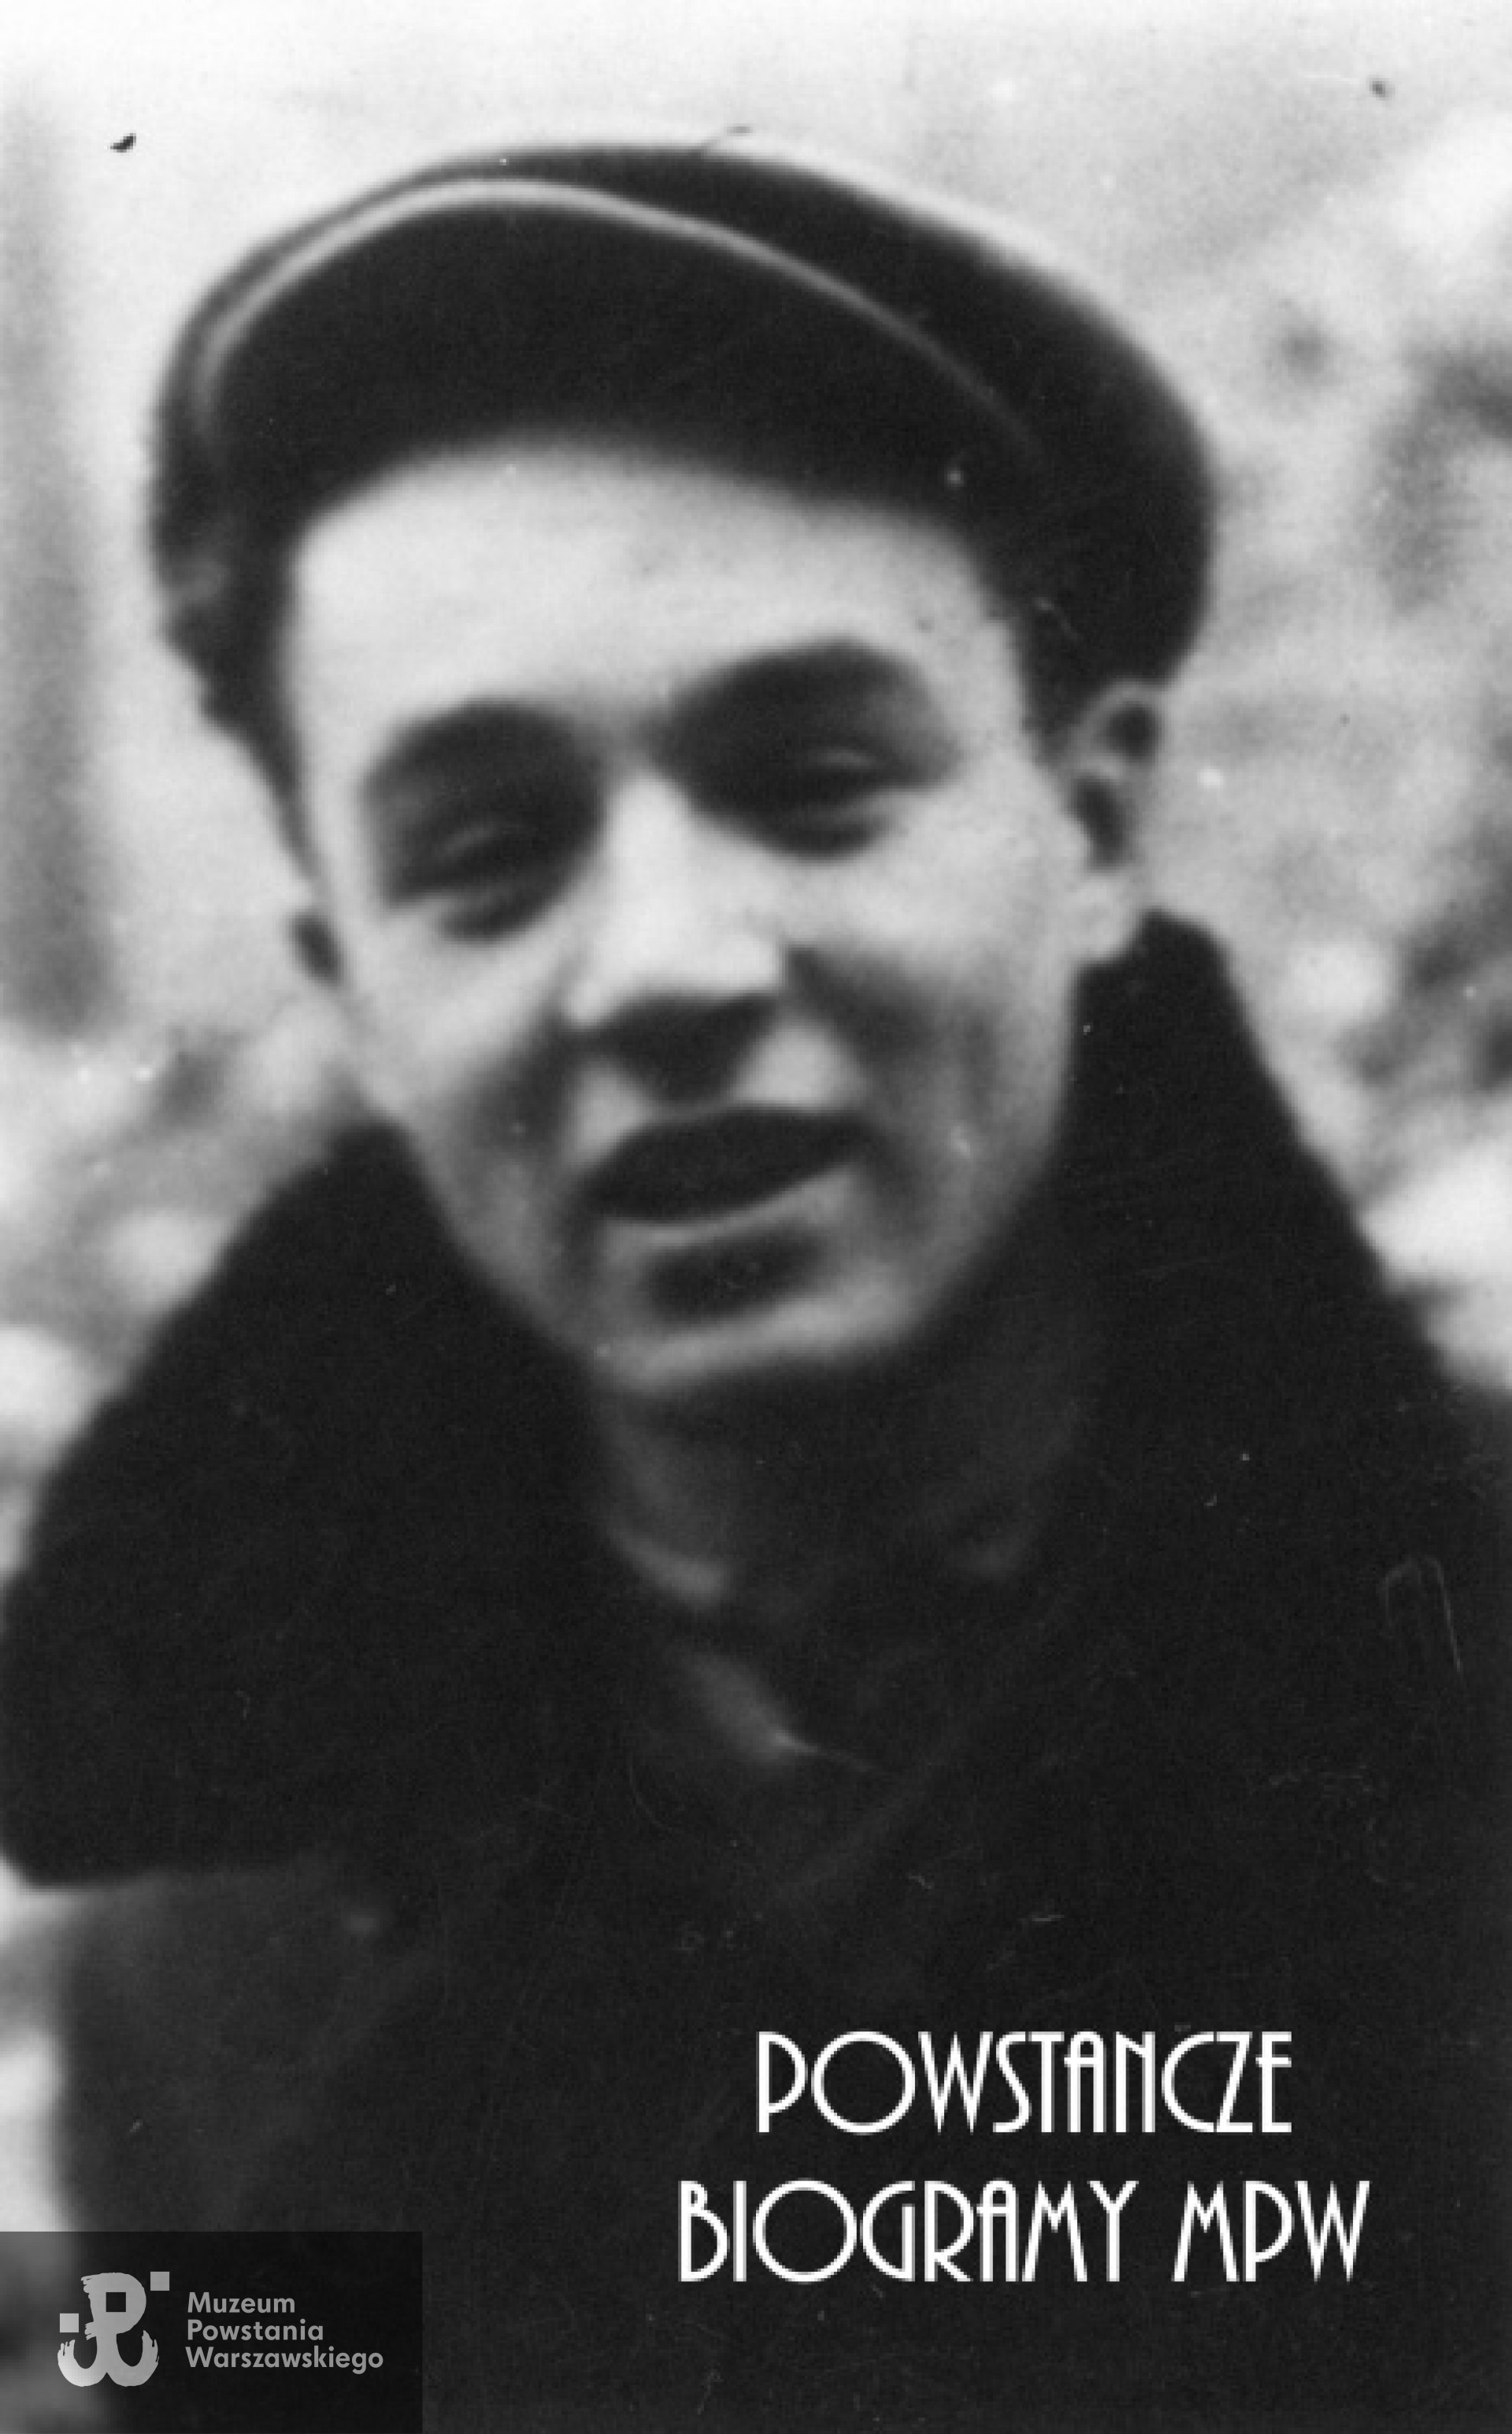 st. strz. Witold Komosa "Hańcza" (1925-1944). Fotografia portretowa ze zbiorów Muzeum Powstania Warszawskiego, sygn. P/8277